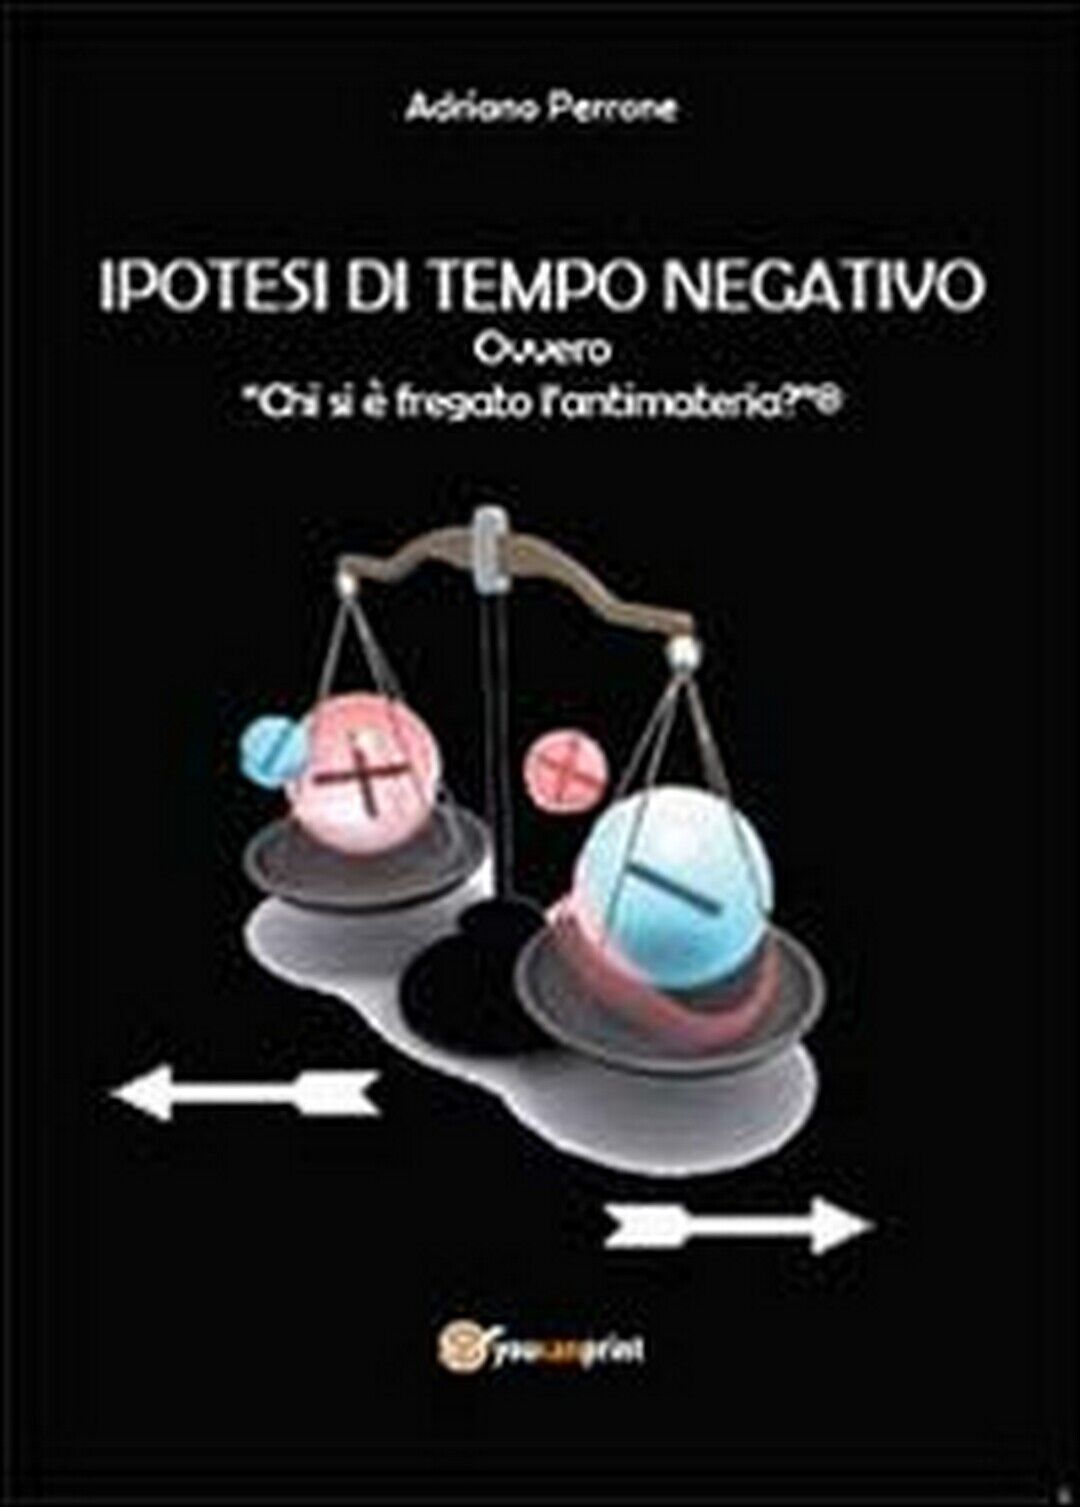 Ipotesi di tempo negativo  di Adriano Perrone,  2014,  Youcanprint